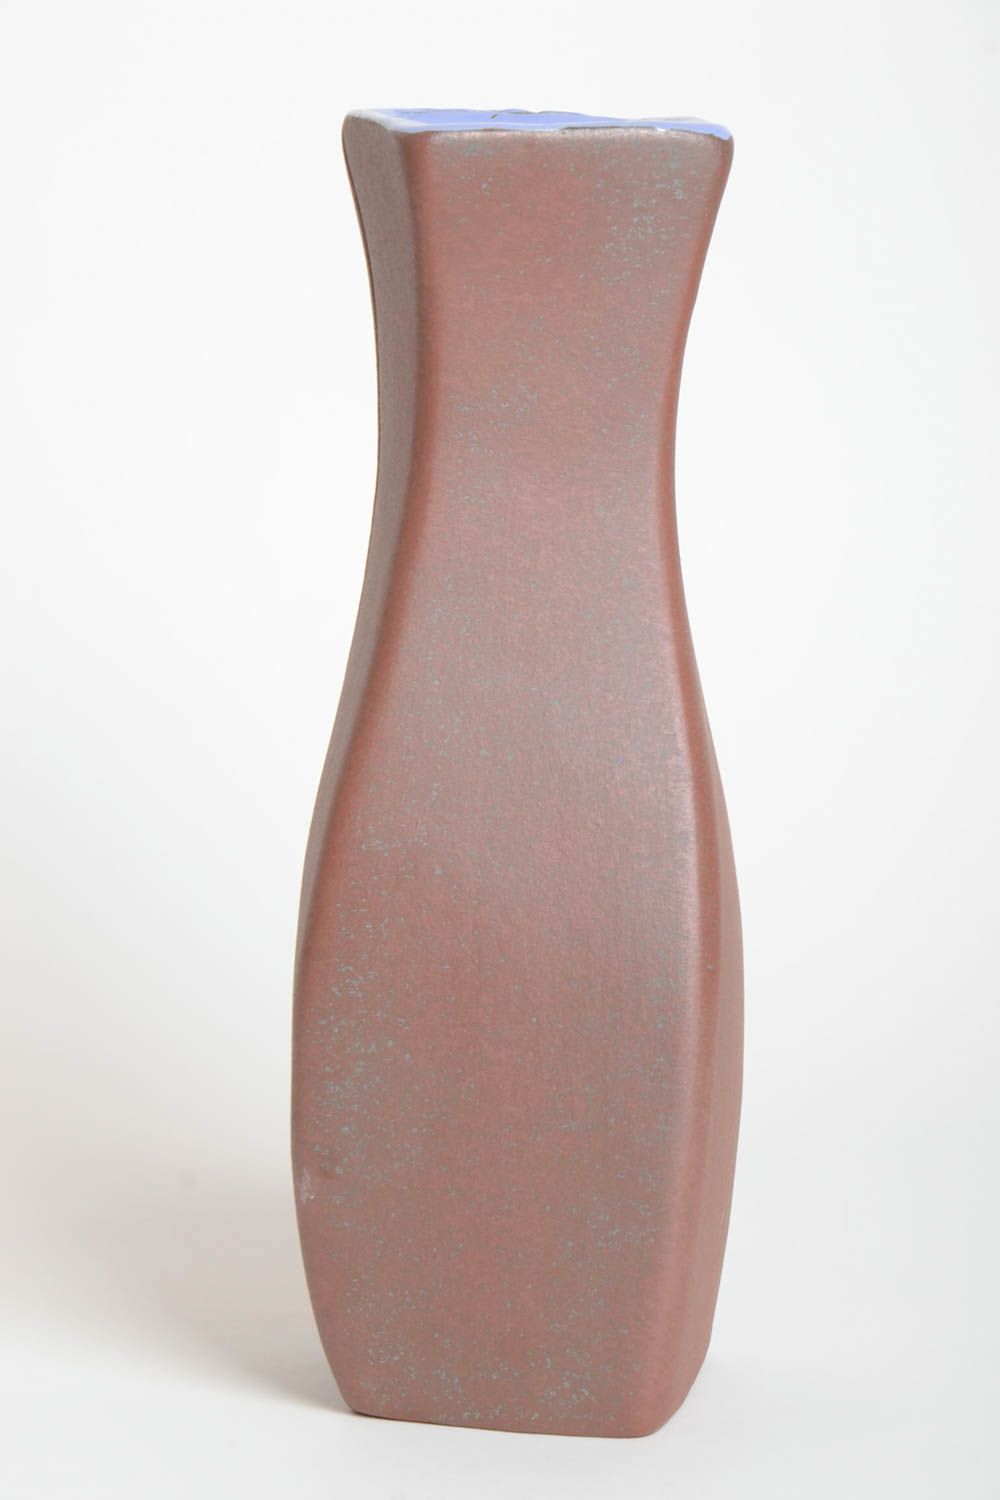 Handmade ausgefallene Vase für Haus Deko Keramik Vase Geschenk für Frauen 2 L foto 4